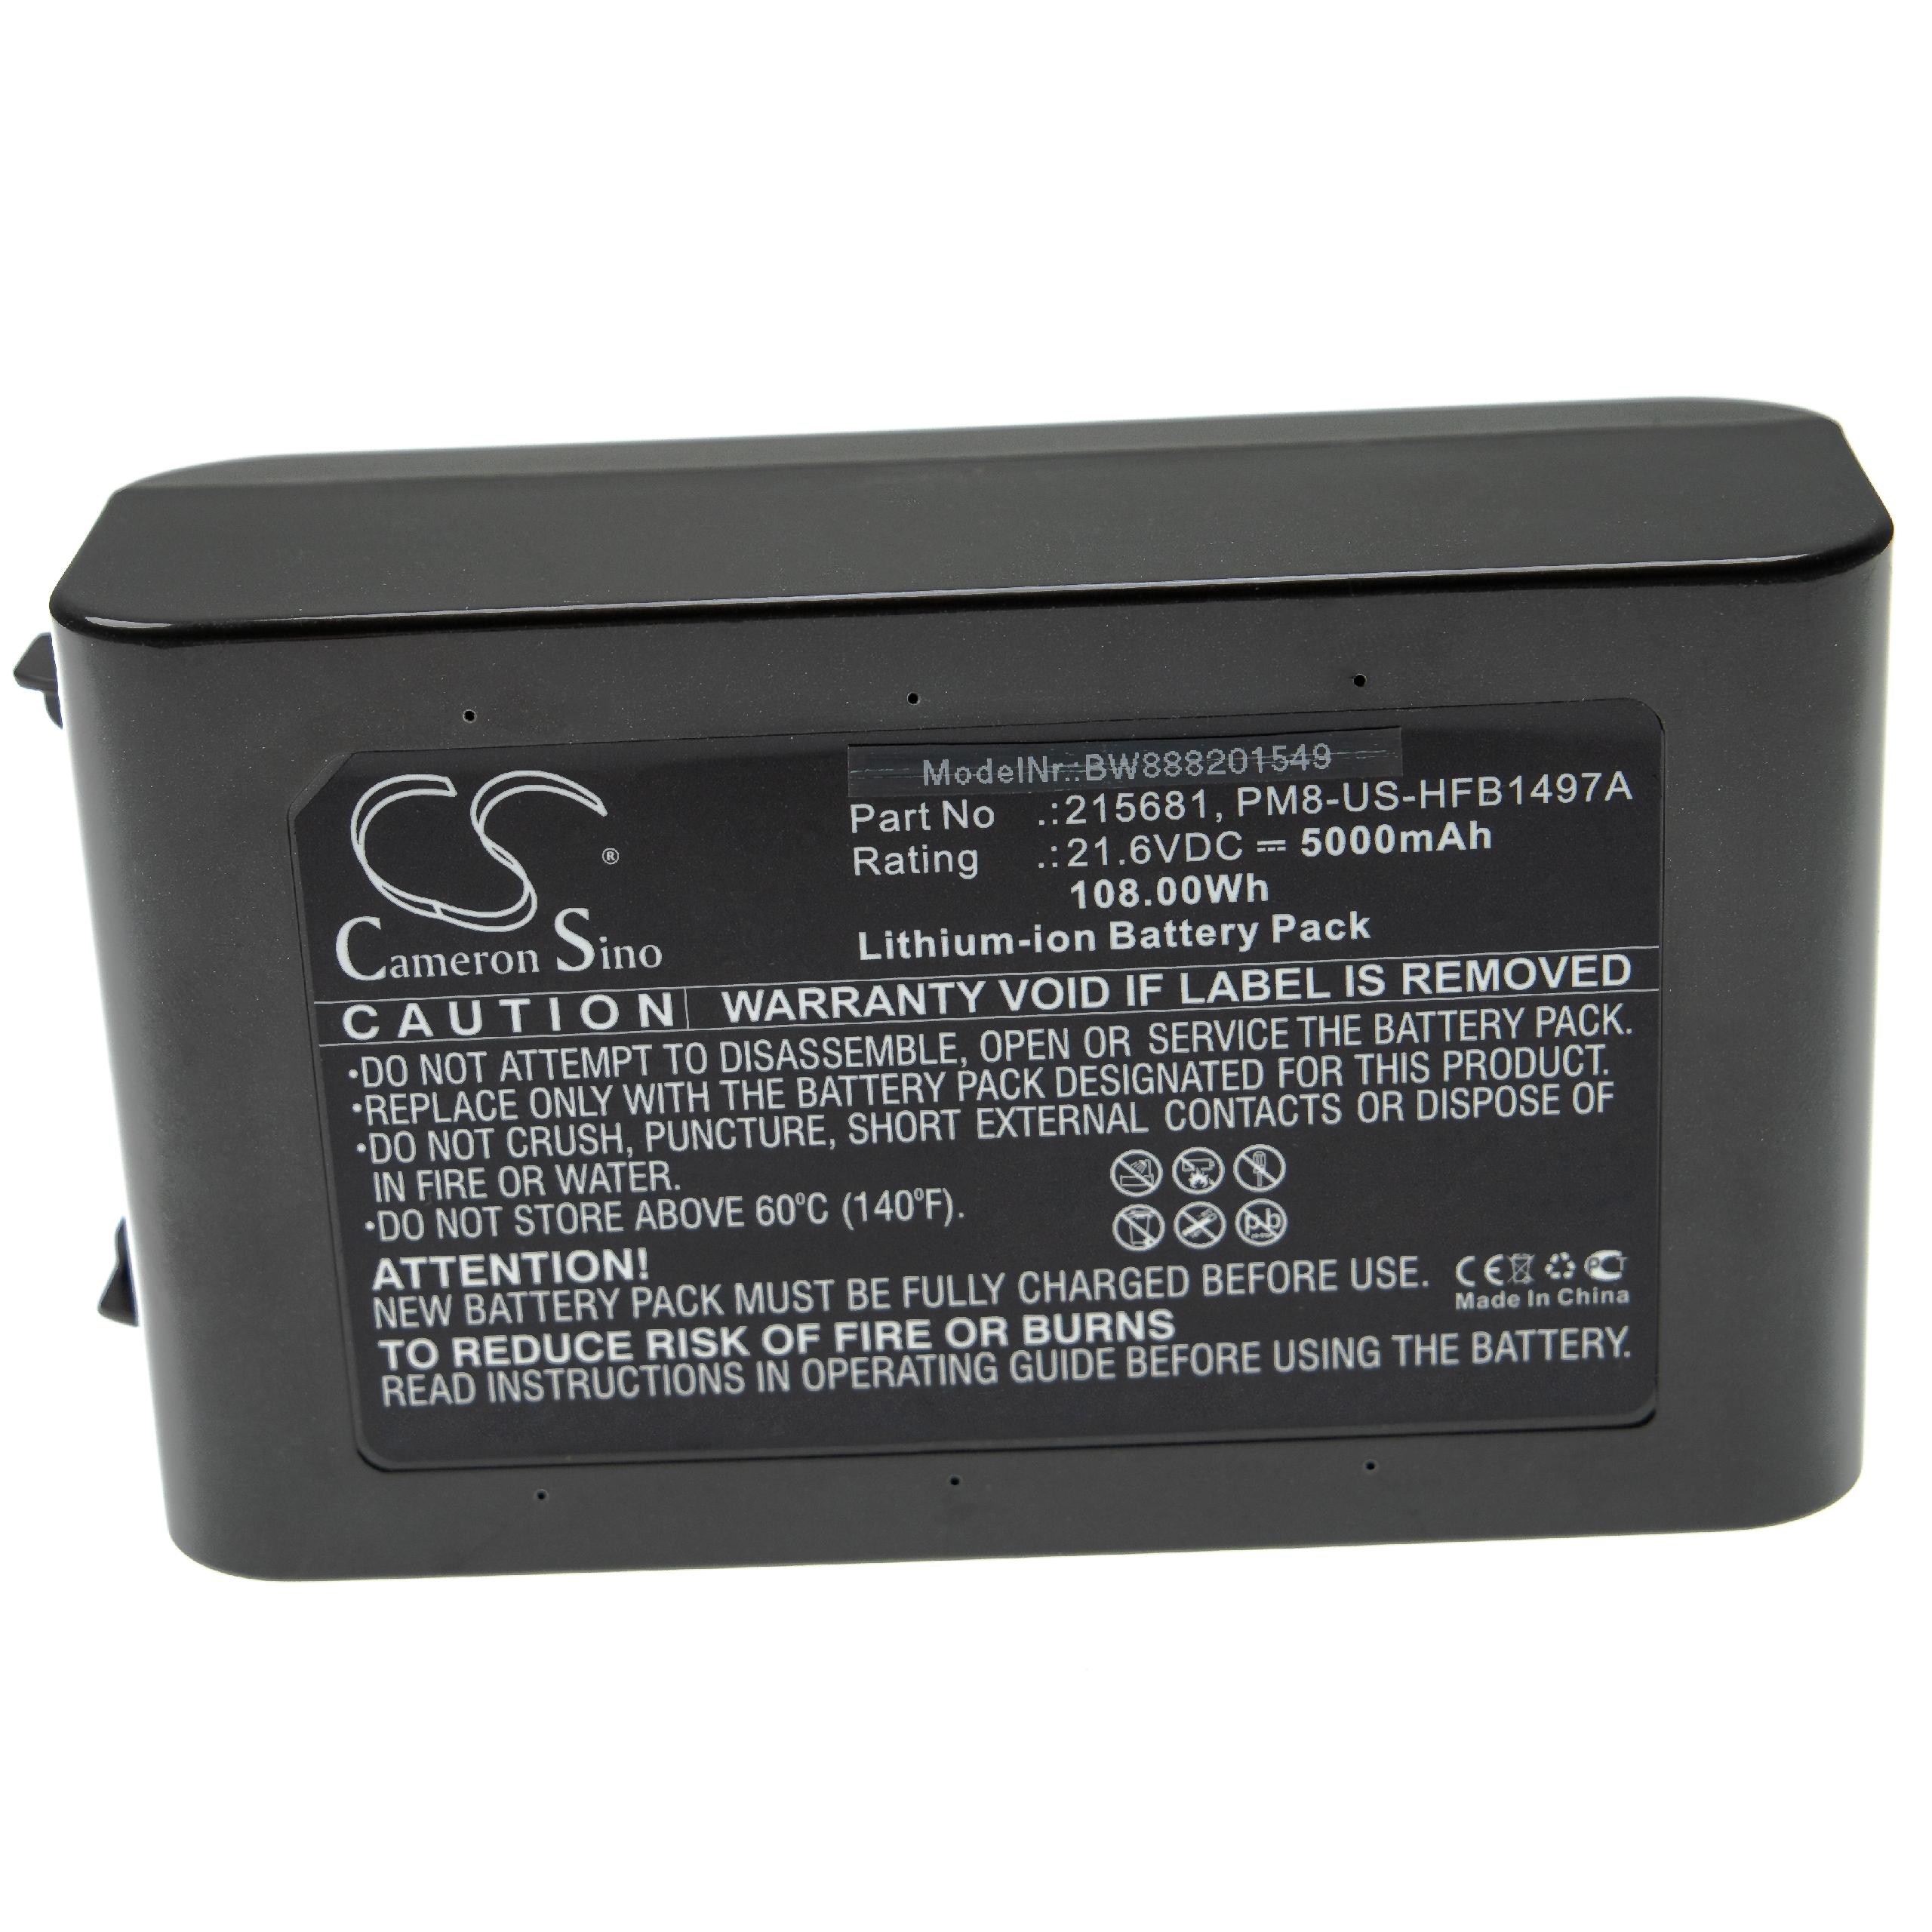 Batterie remplace Dyson 215967-01/02, 215681, 967834-02, 215866-01/02 pour aspirateur - 5000mAh 21,6V Li-ion